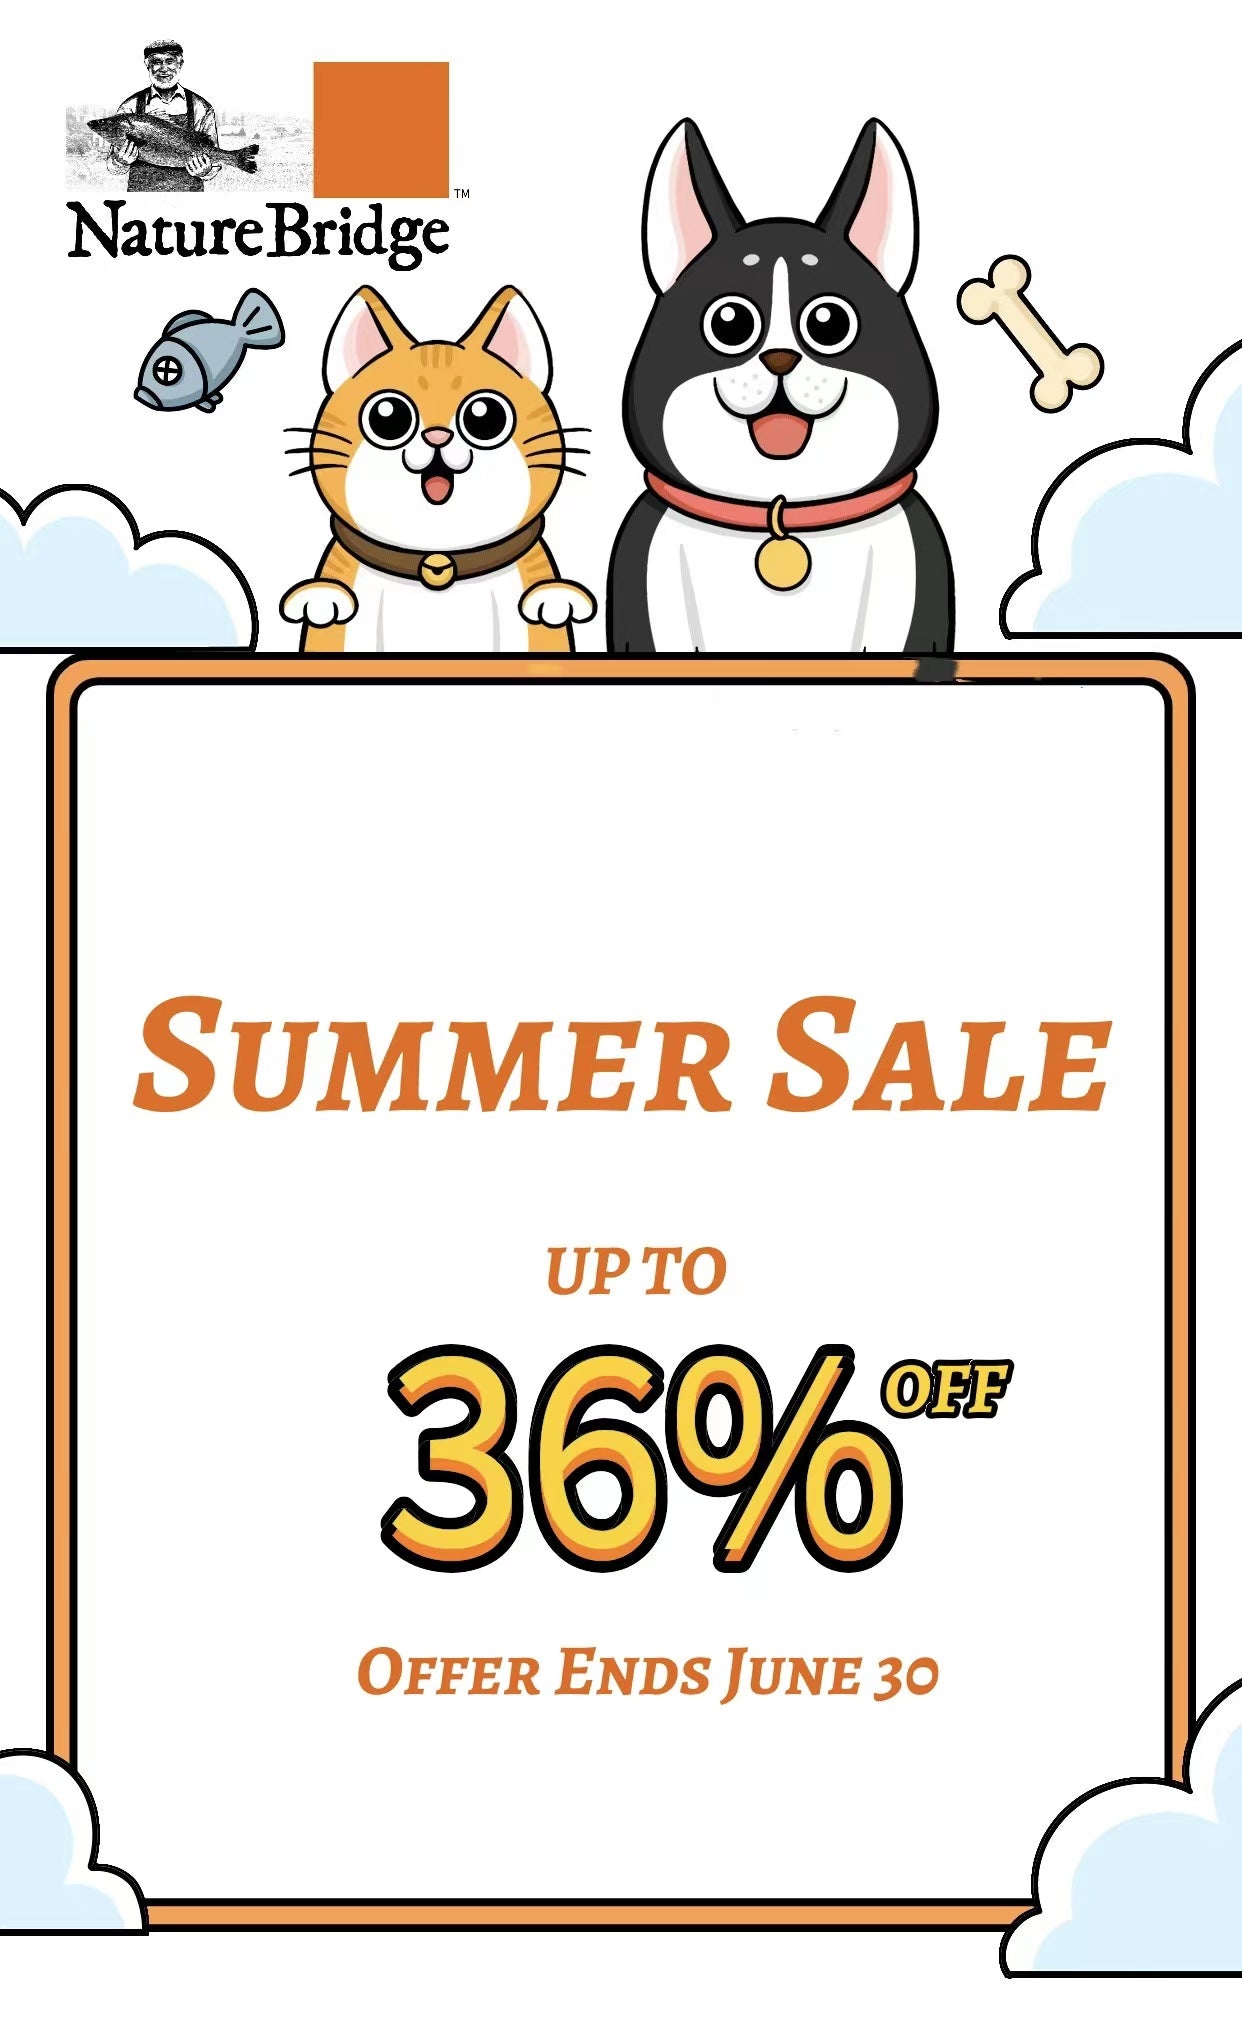 NatureBridge Summer Sale Promotion Up to 36% off